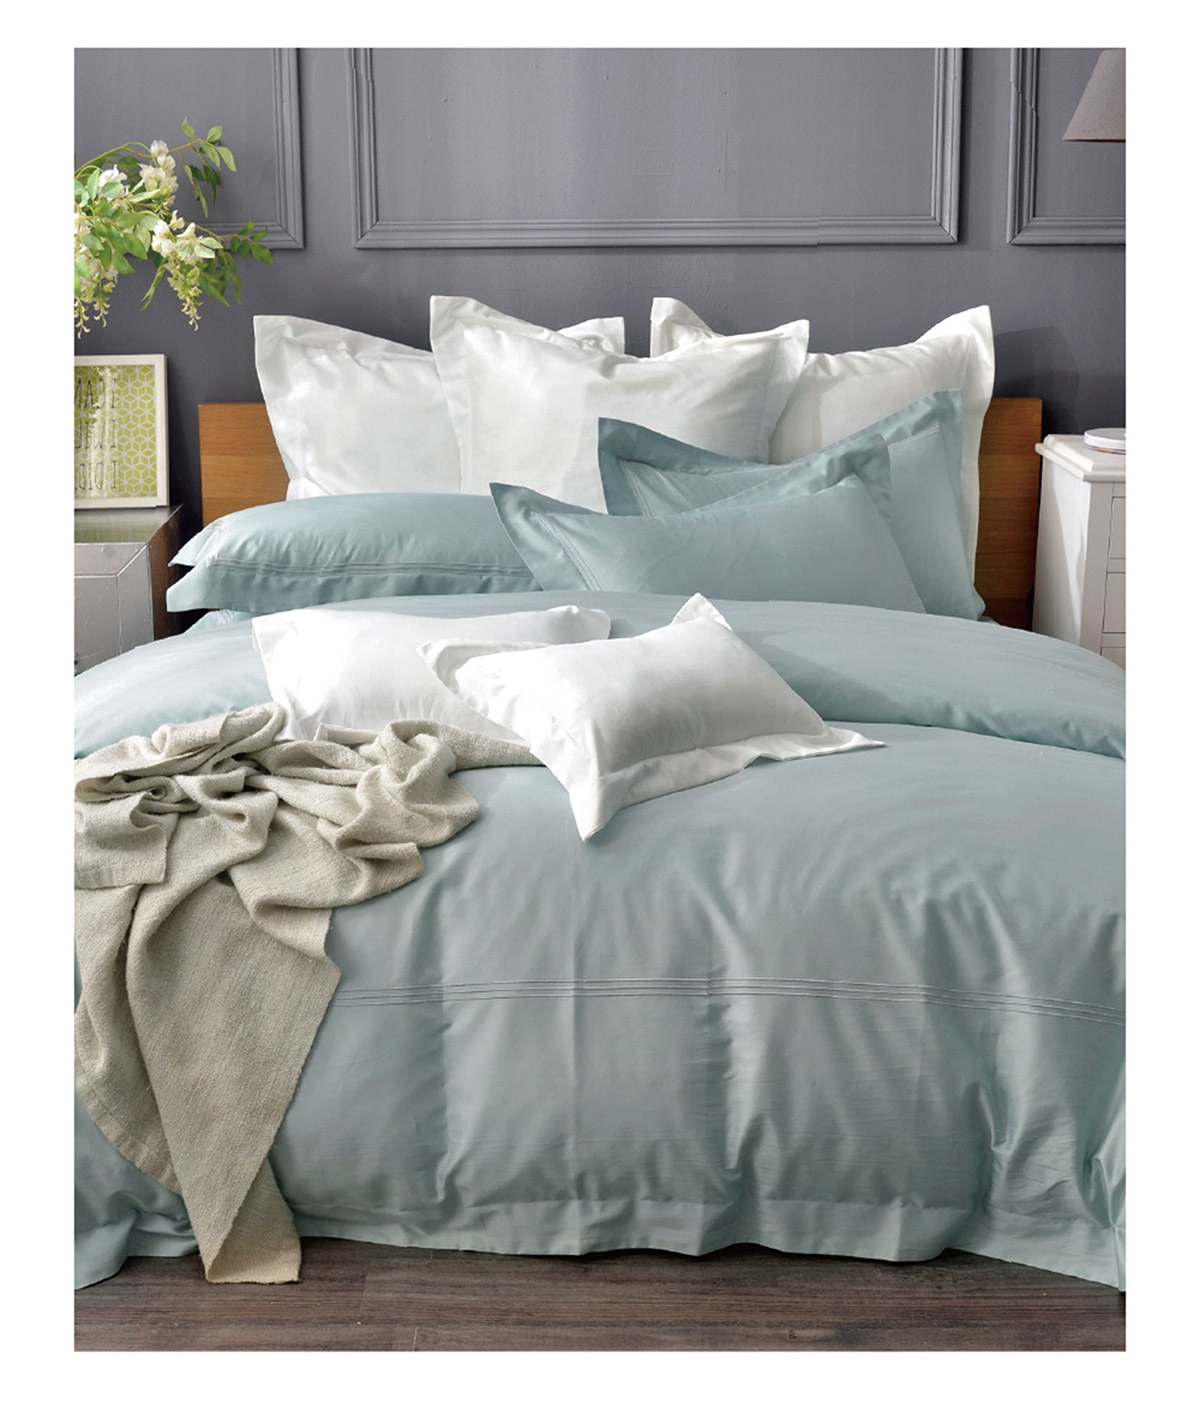 雙人刺繡被套床包四件組-寧靜藍,輕量薄被,徹夜好眠,可於春夏當涼被使用,於秋冬放入被胎,增加保暖度.